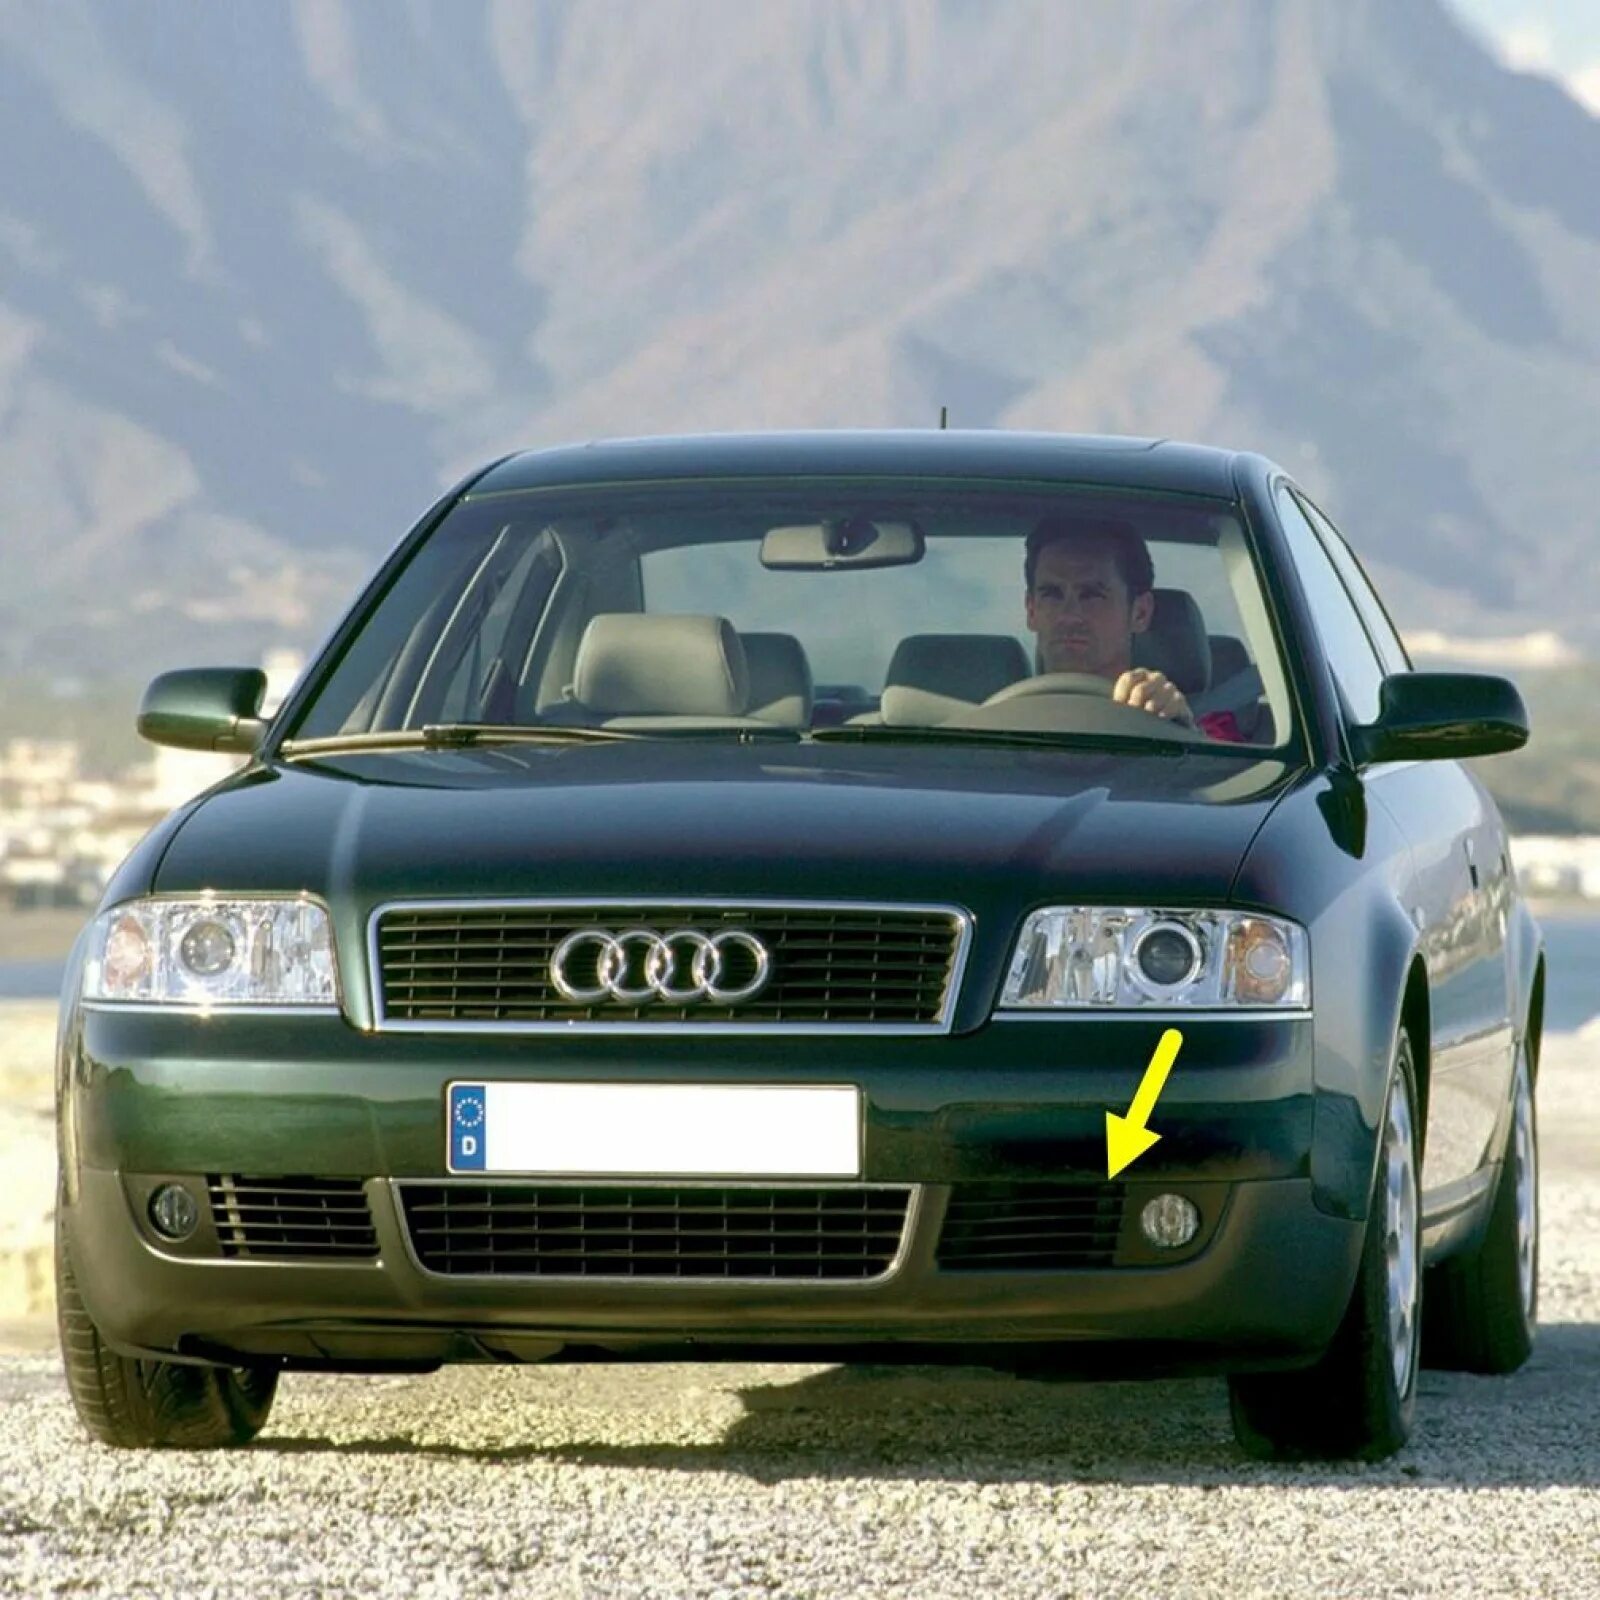 A6 e. Audi a6 2001. Audi a6 c5. Audi a6 c5 1997. Audi a6 c4 1998.